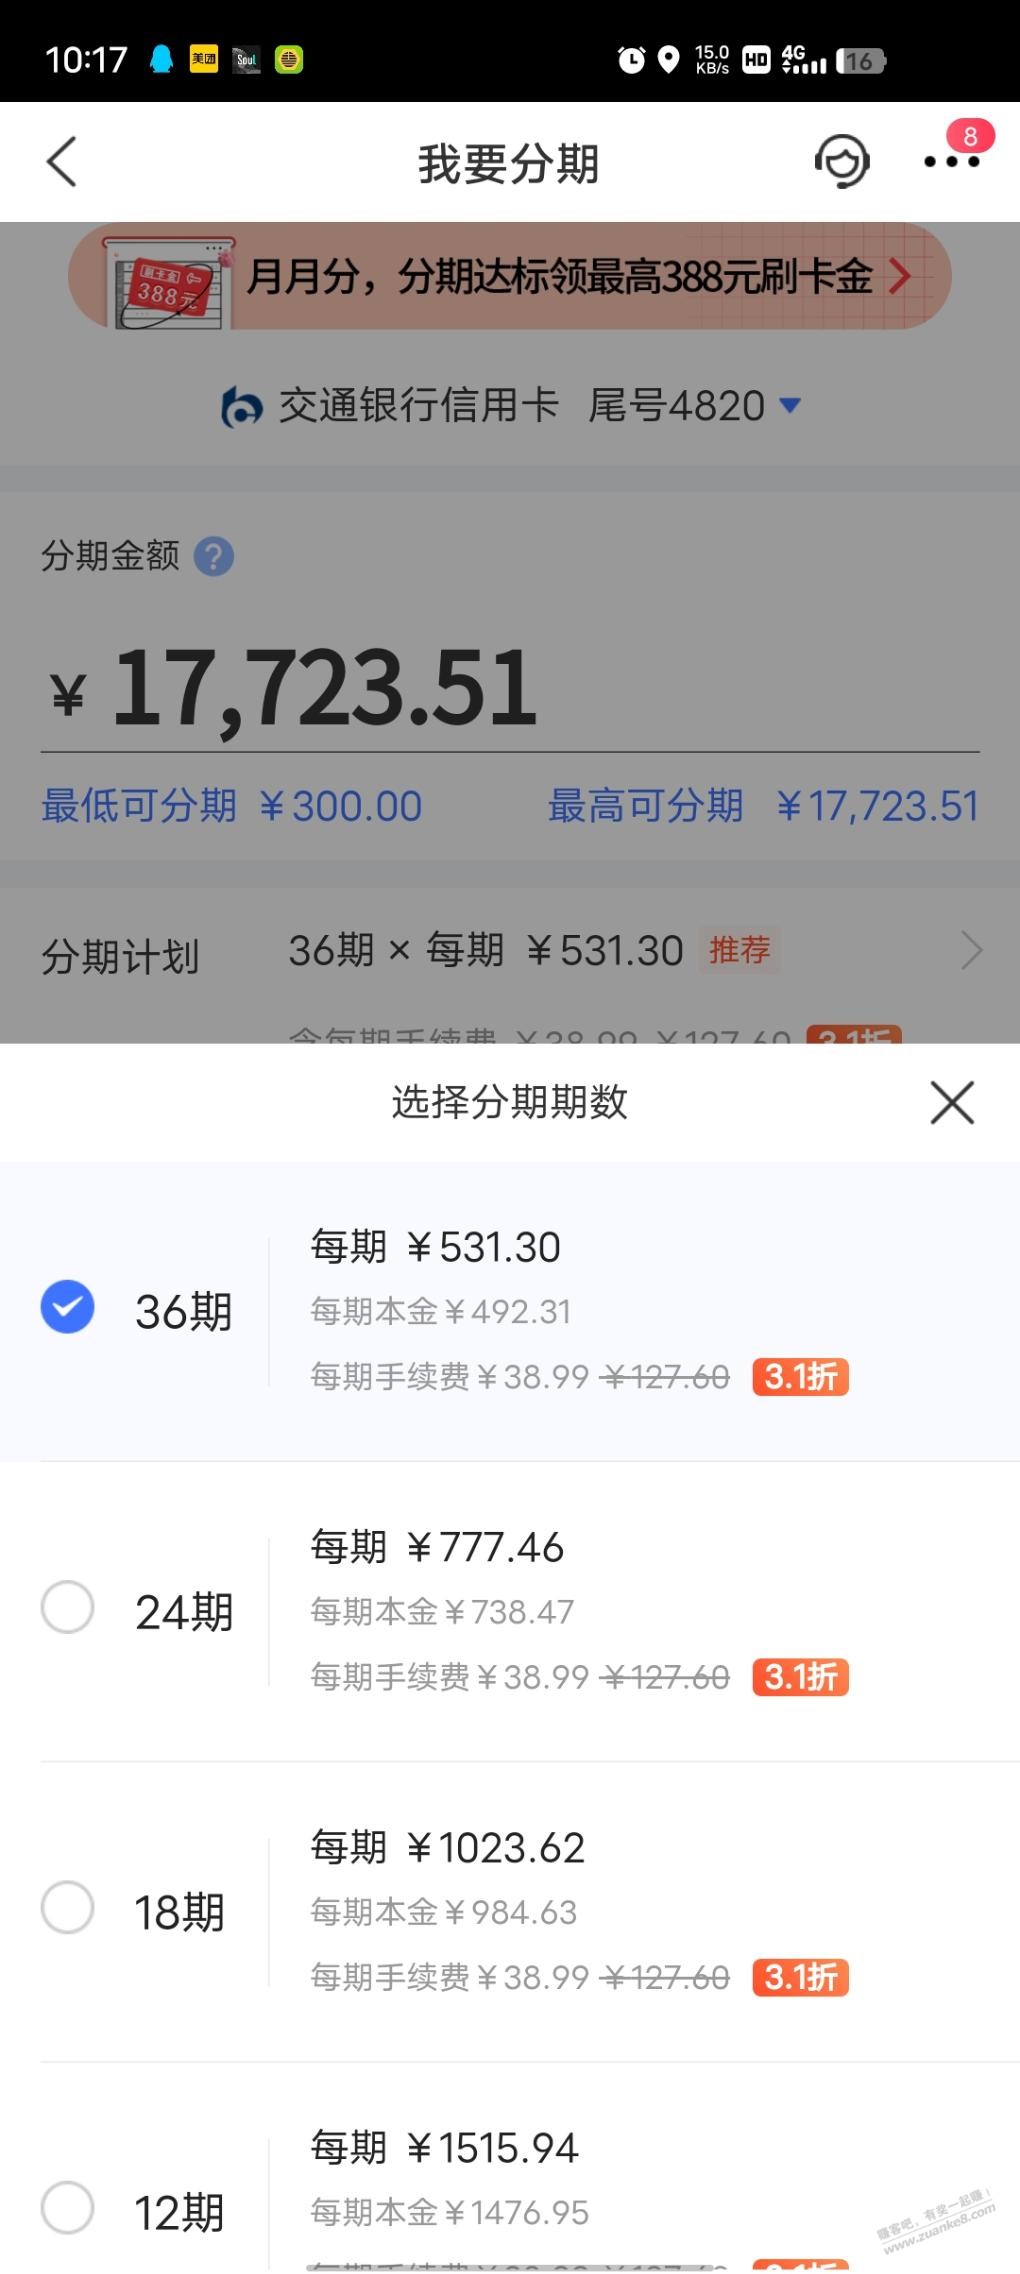 交行xyk 现金账单分期3.1折扣--惠小助(52huixz.com)